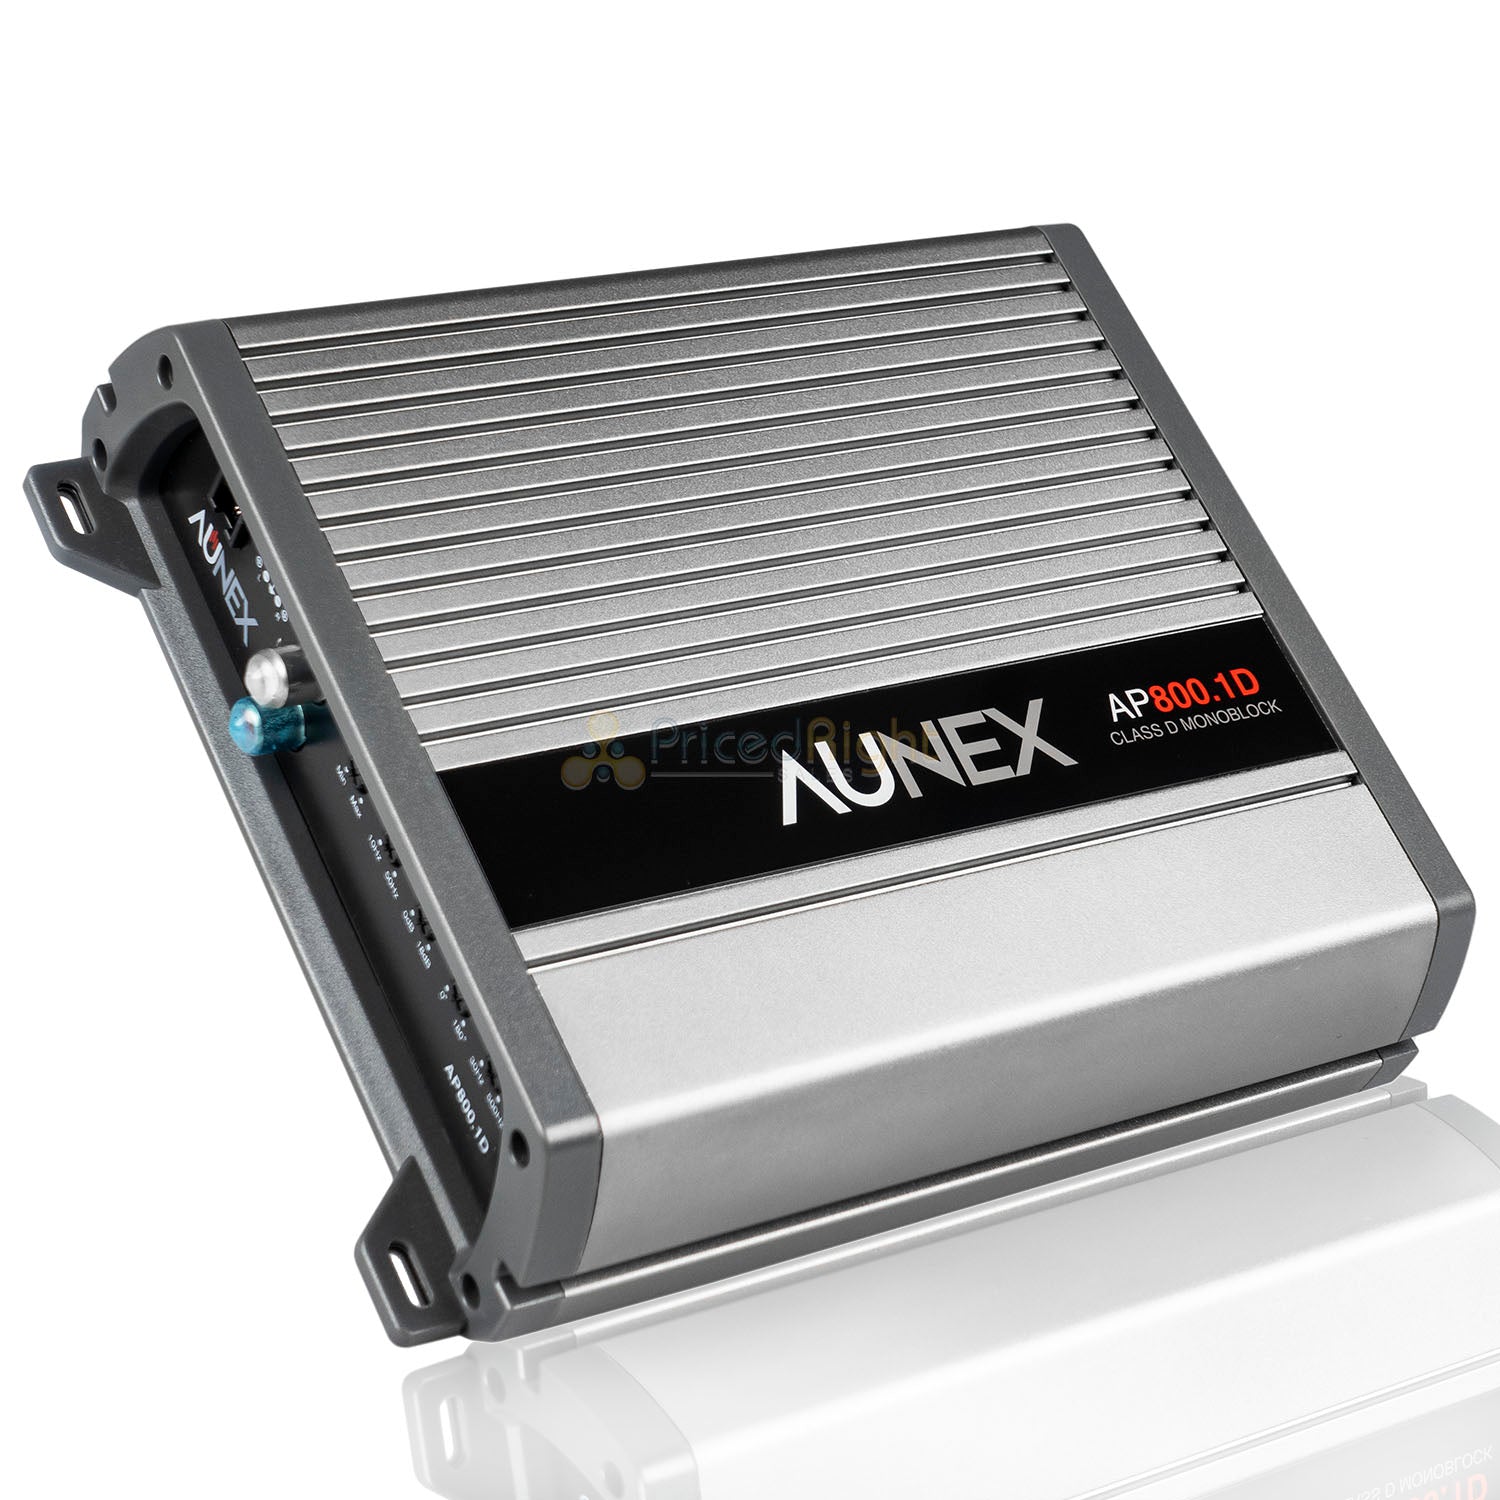 800 Watt Monoblock Amplifier Class D Mono Amp Car Audio 1 Channel Aunex AP800.1D